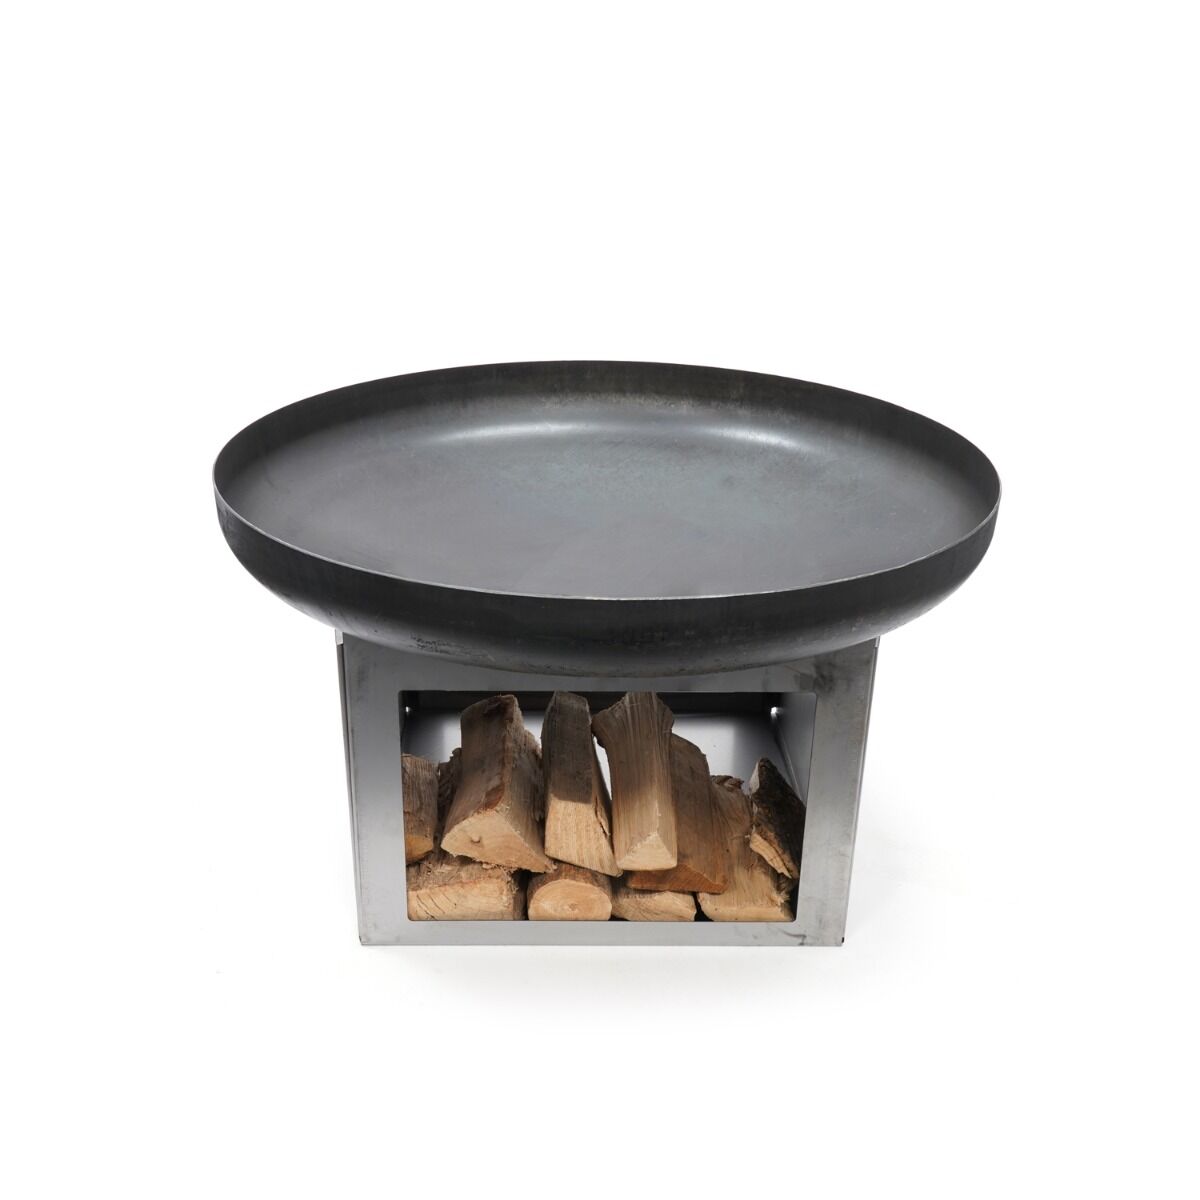 HEAT Fire Bowl Fresvik with Wood Storage